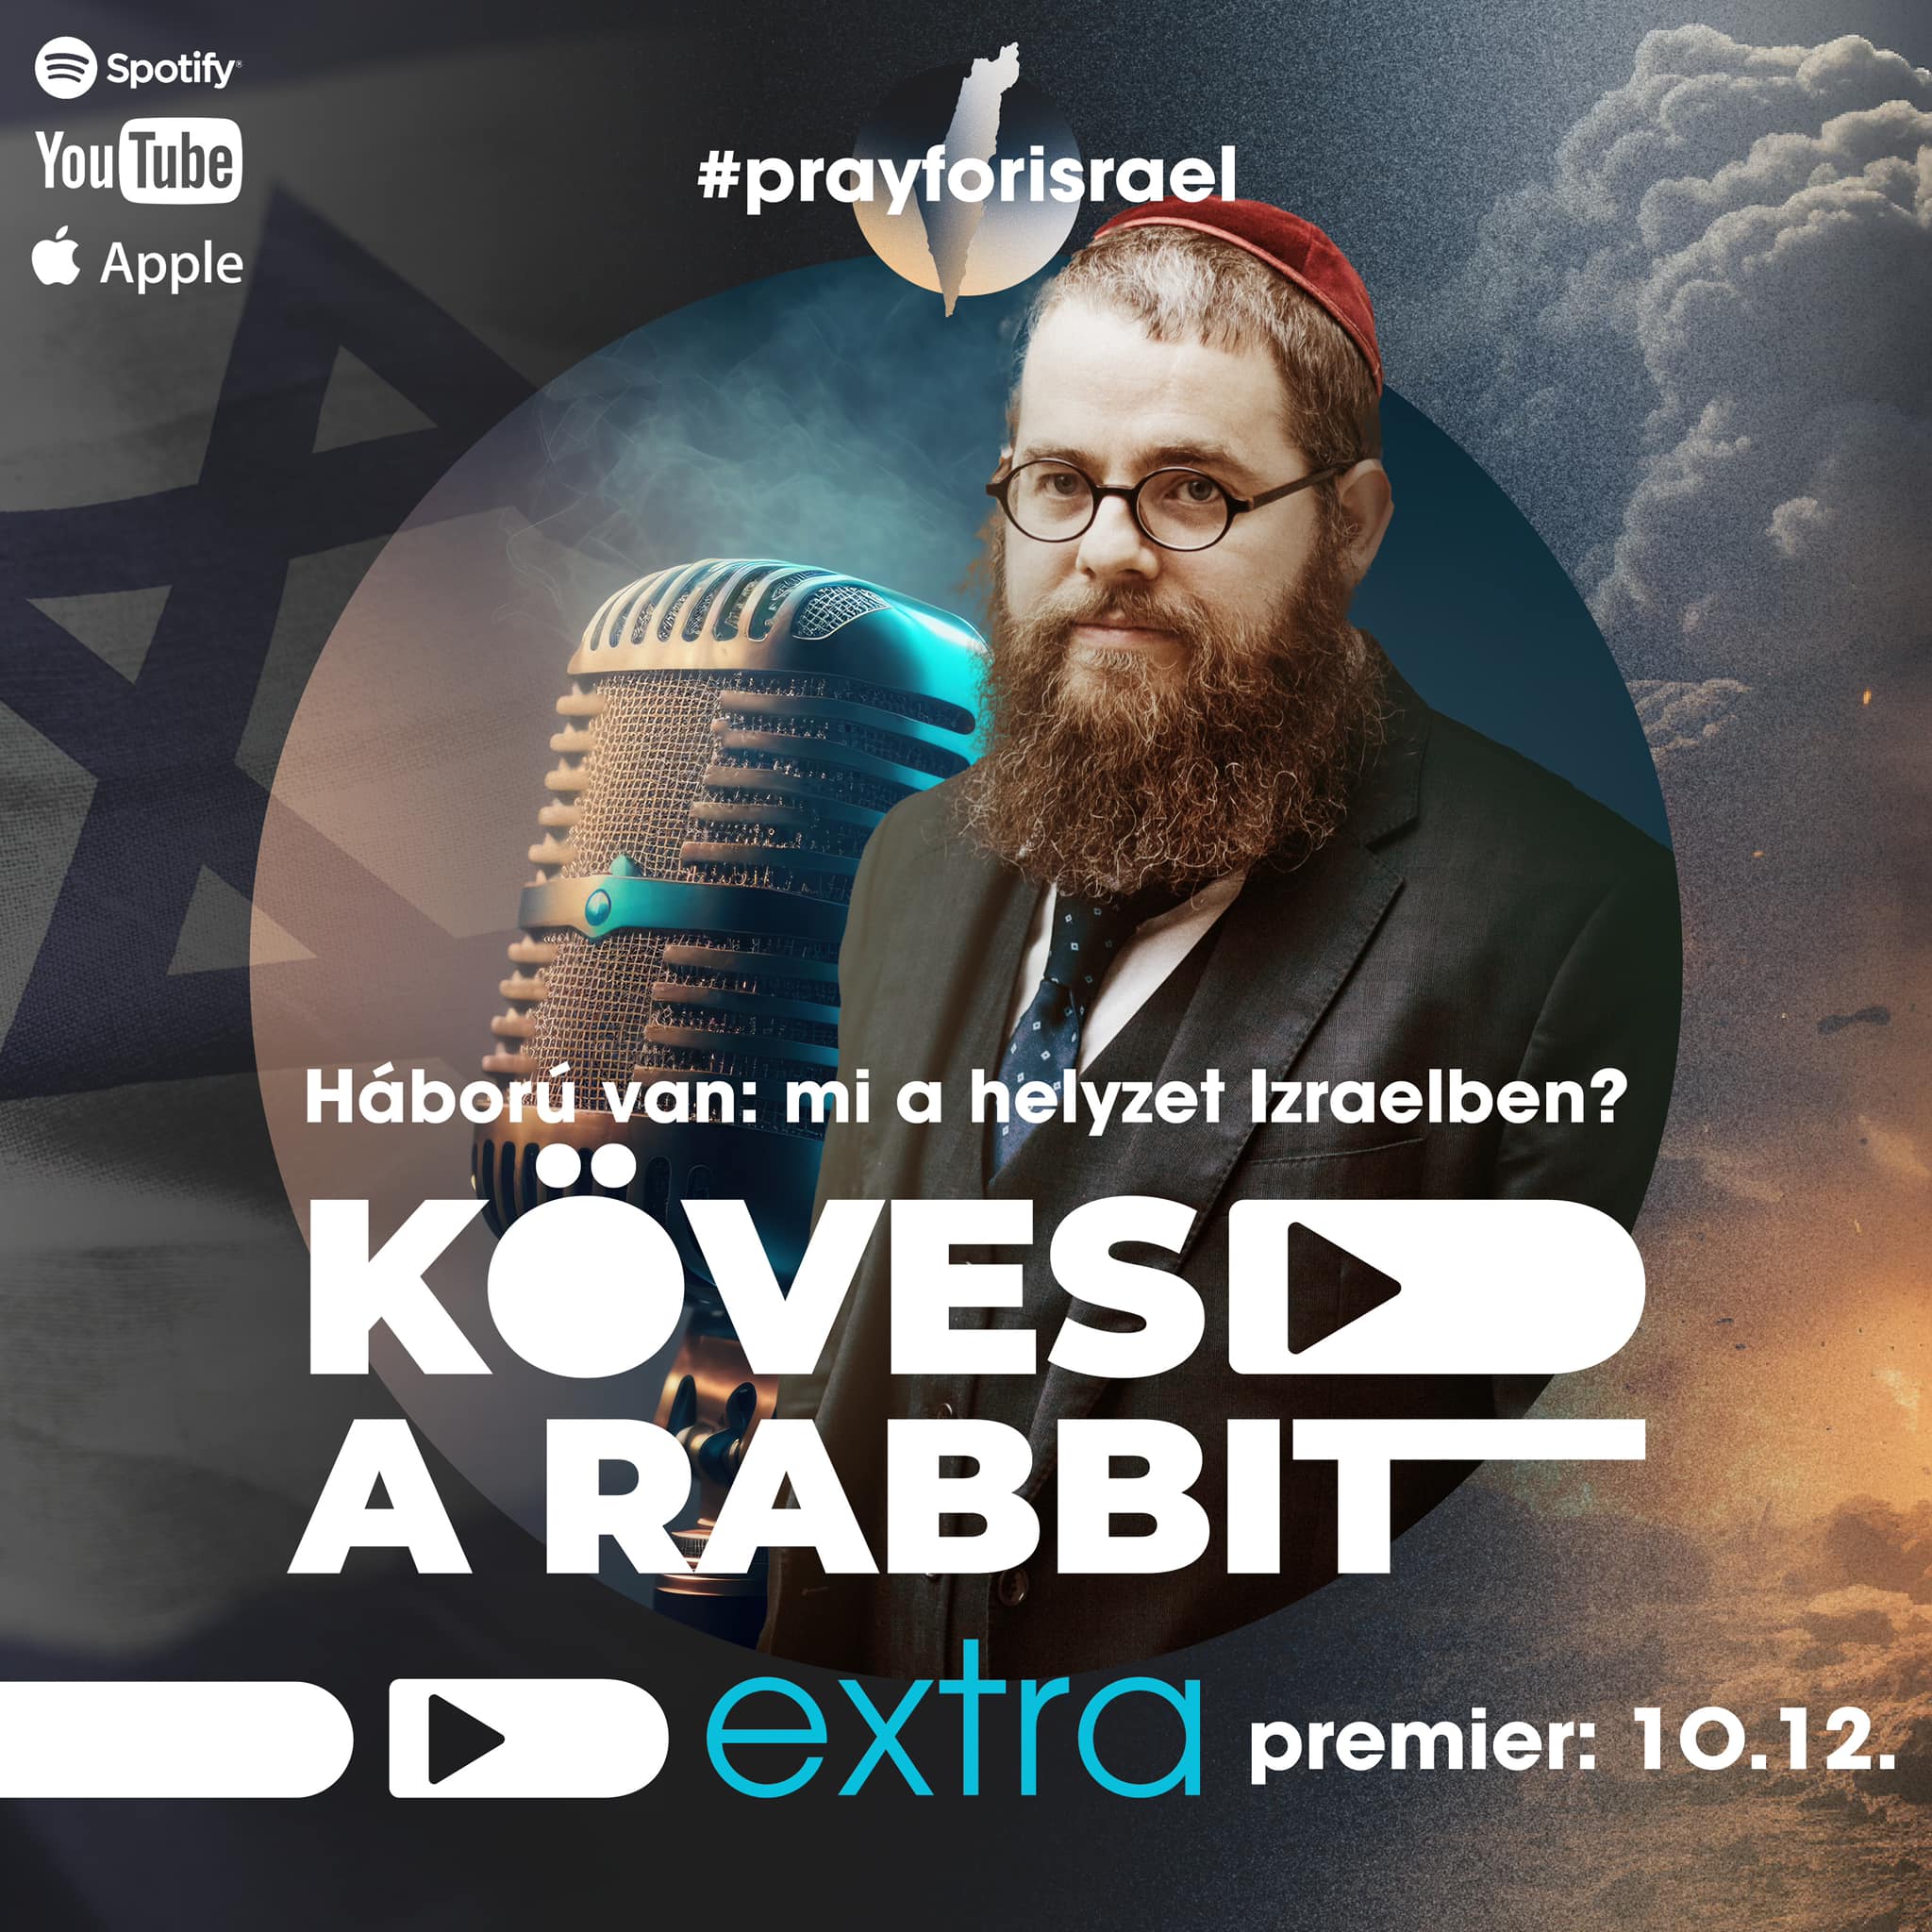 Kövesd a rabbit podcast rendkívüli kiadás október 13-án!